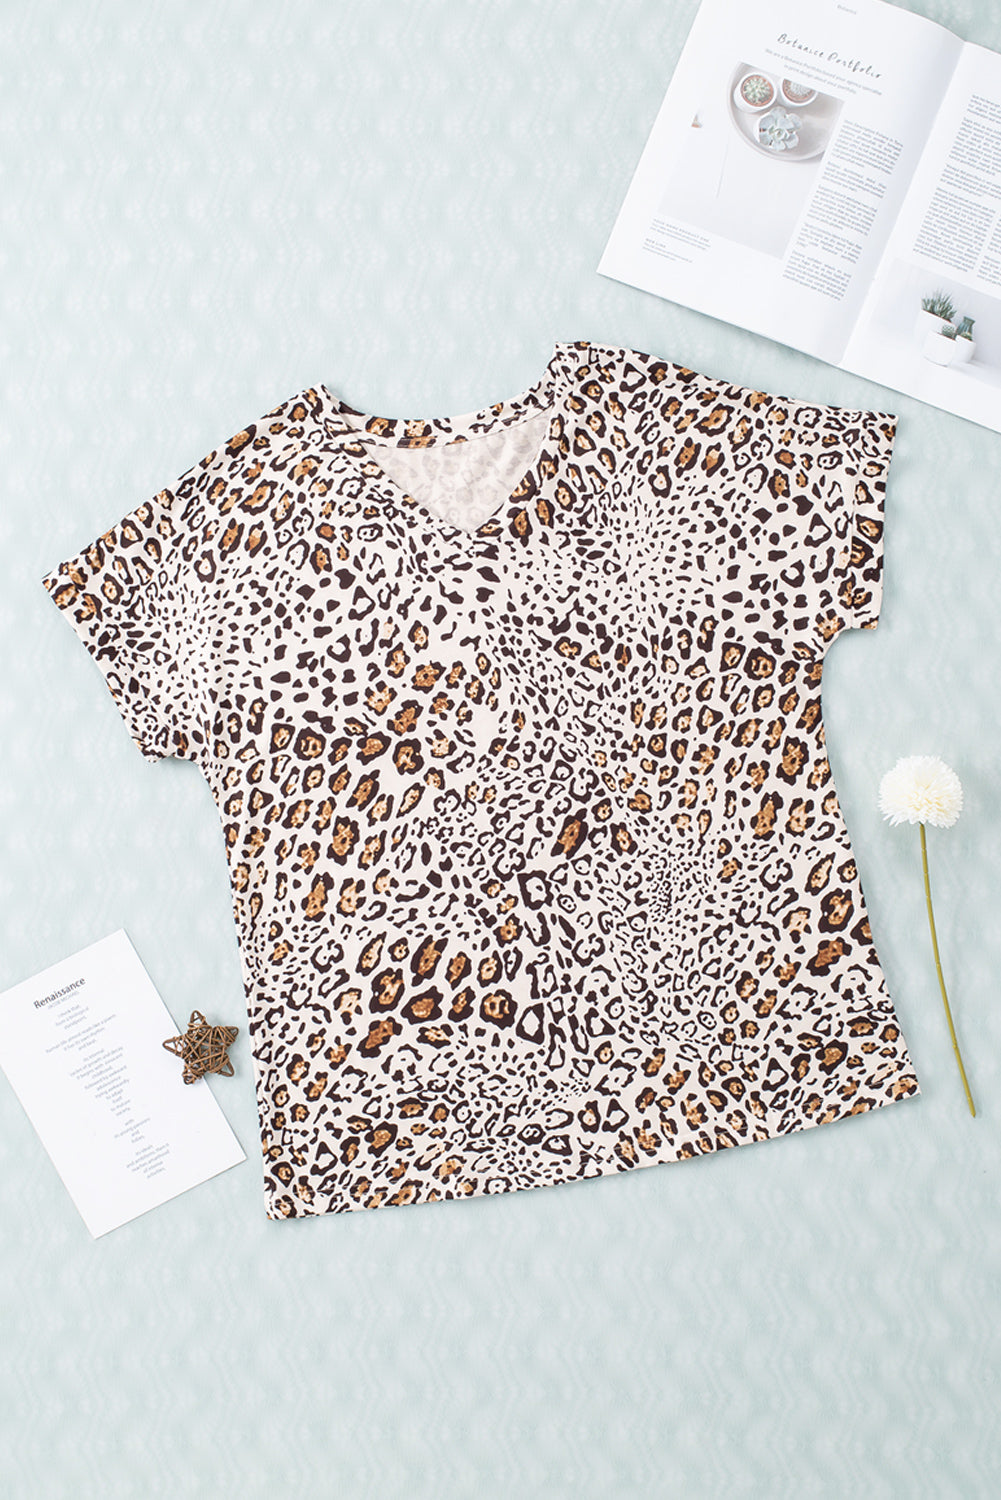 T-Shirt mit Leopardenmuster, lockerer Passform und V-Ausschnitt